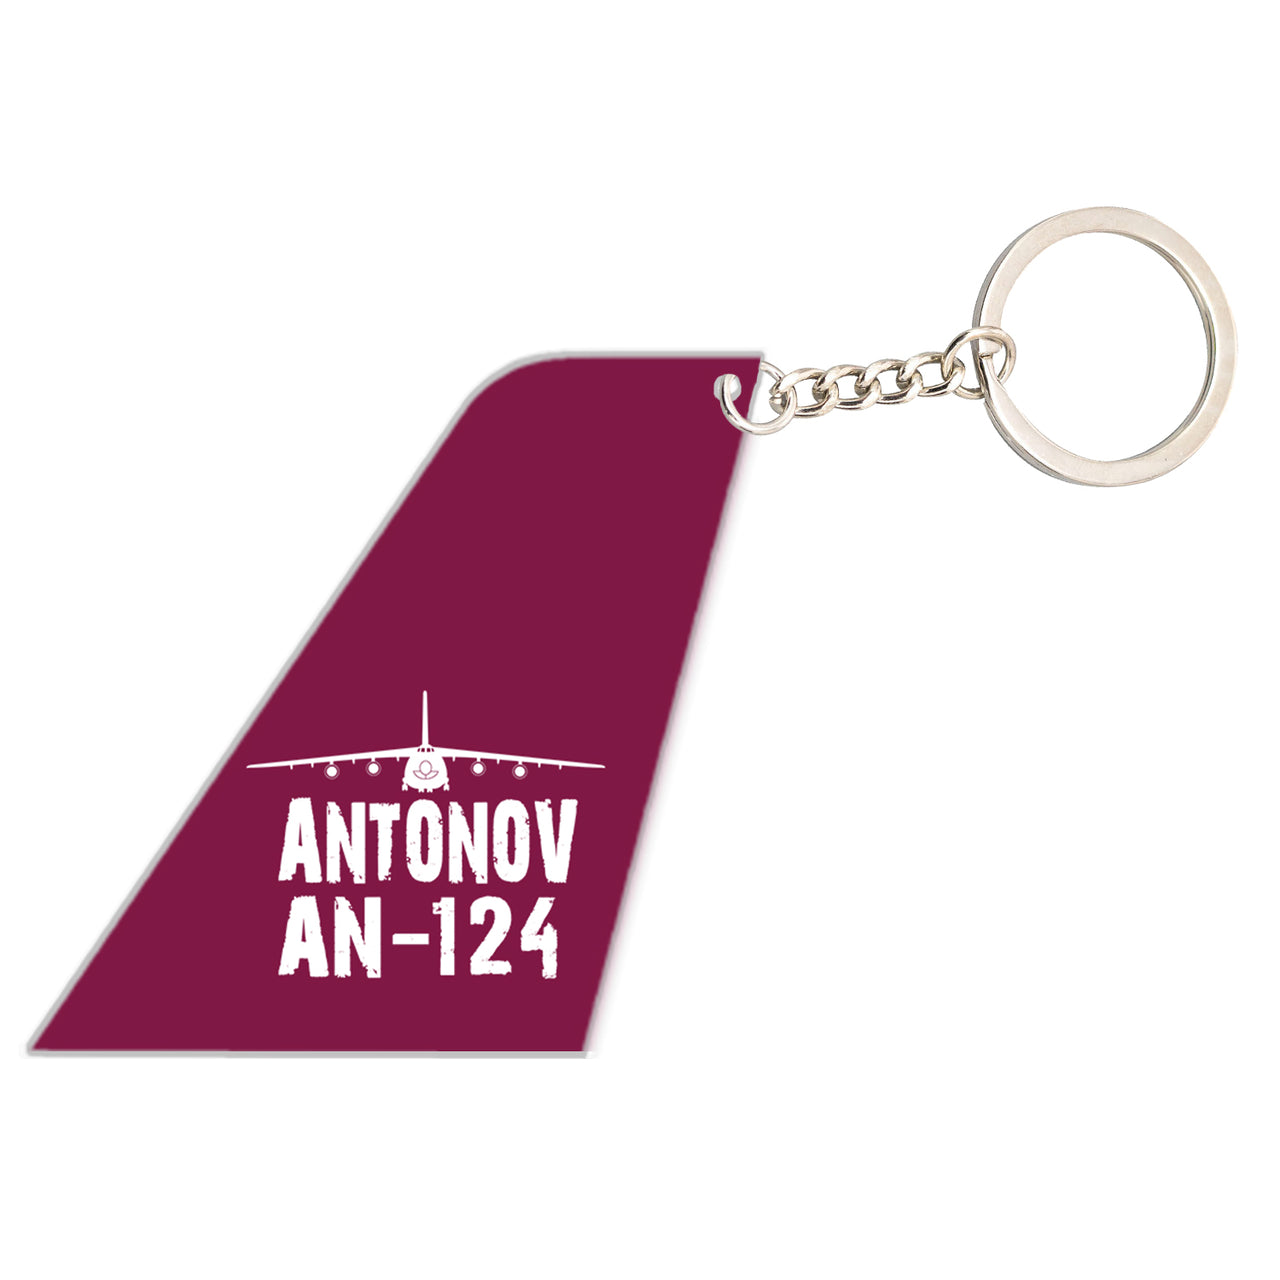 Antonov AN-124 & Plane Designed Tail Key Chains